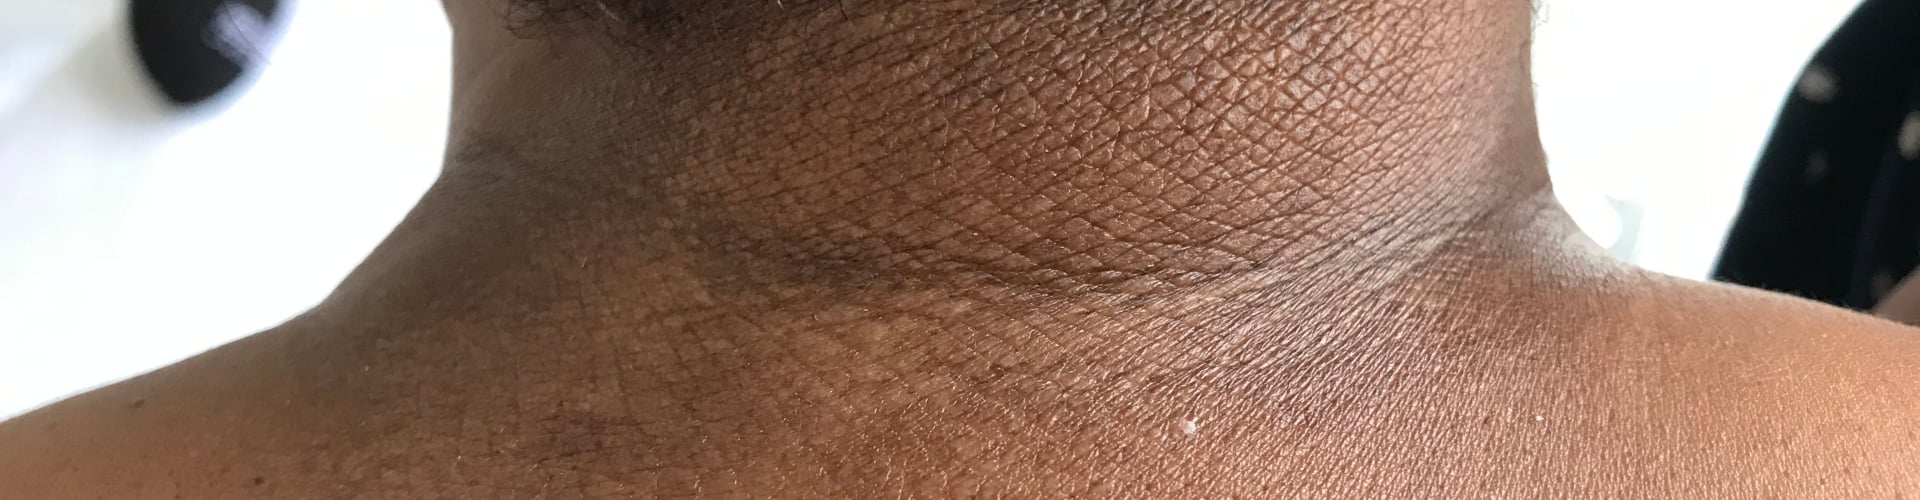 Atopische dermatitis in de donkere huid